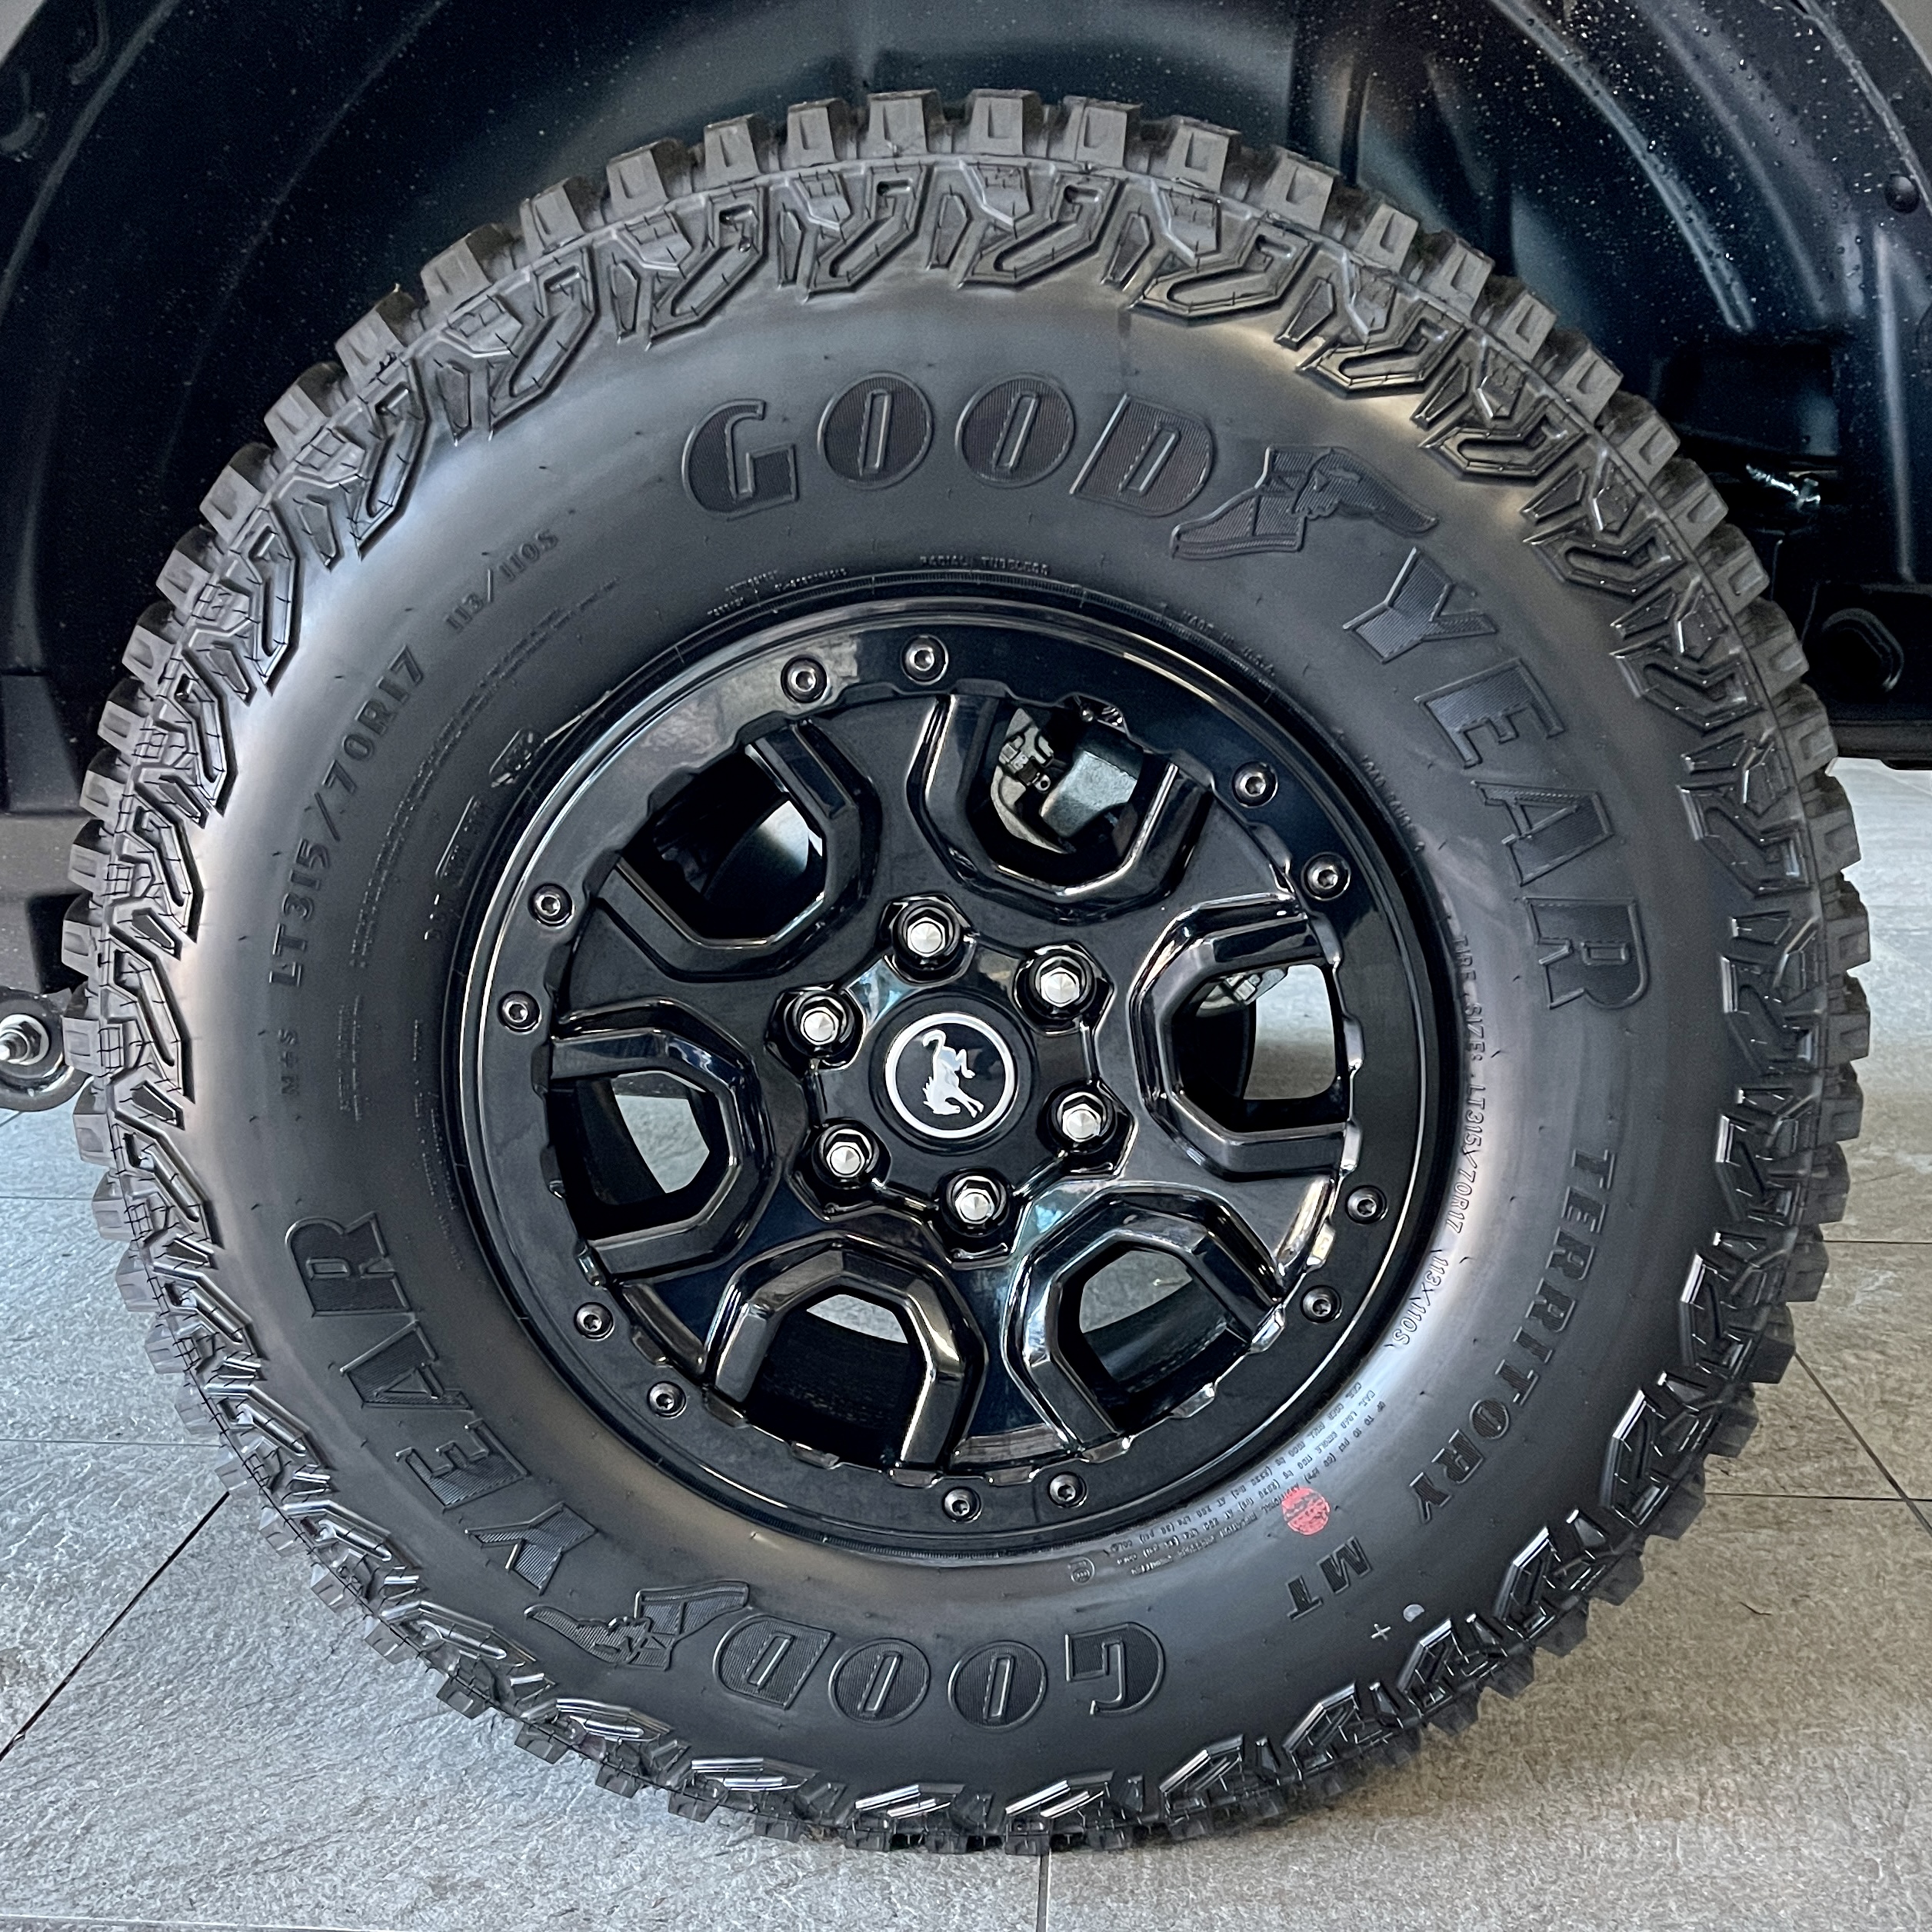 Ford Bronco Anyone install black lug nuts? AF7C9180-9565-49DD-81C1-4C3B329850C6